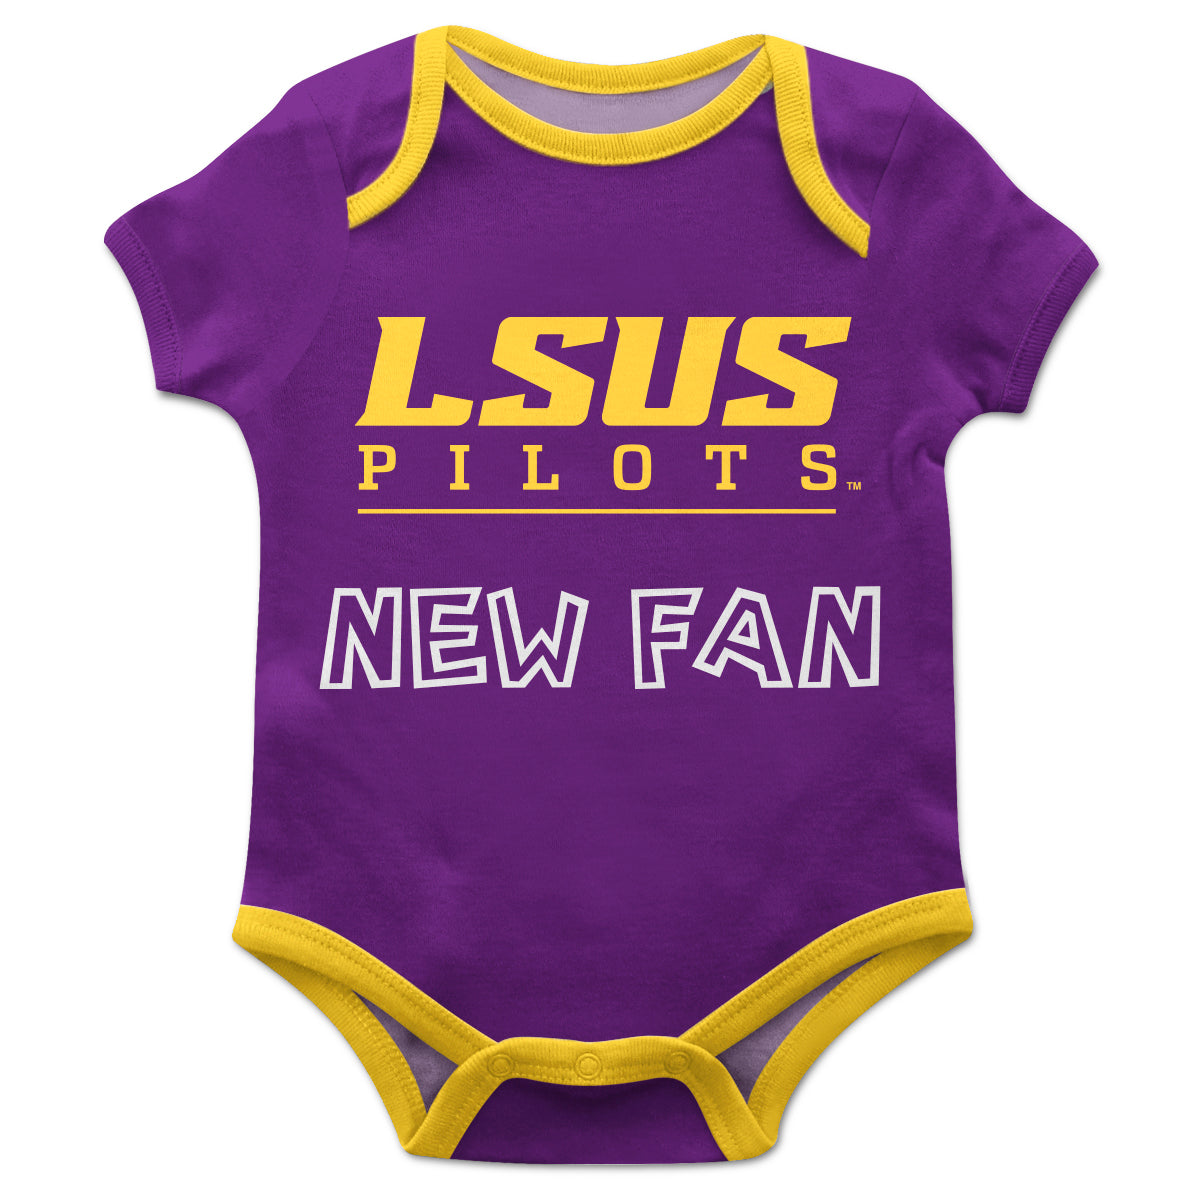 LSU Shreveport LSUS Pilots Infant Game Day Purple Short Sleeve One Piece Jumpsuit New Fan Logo Bodysuit by Vive La Fete